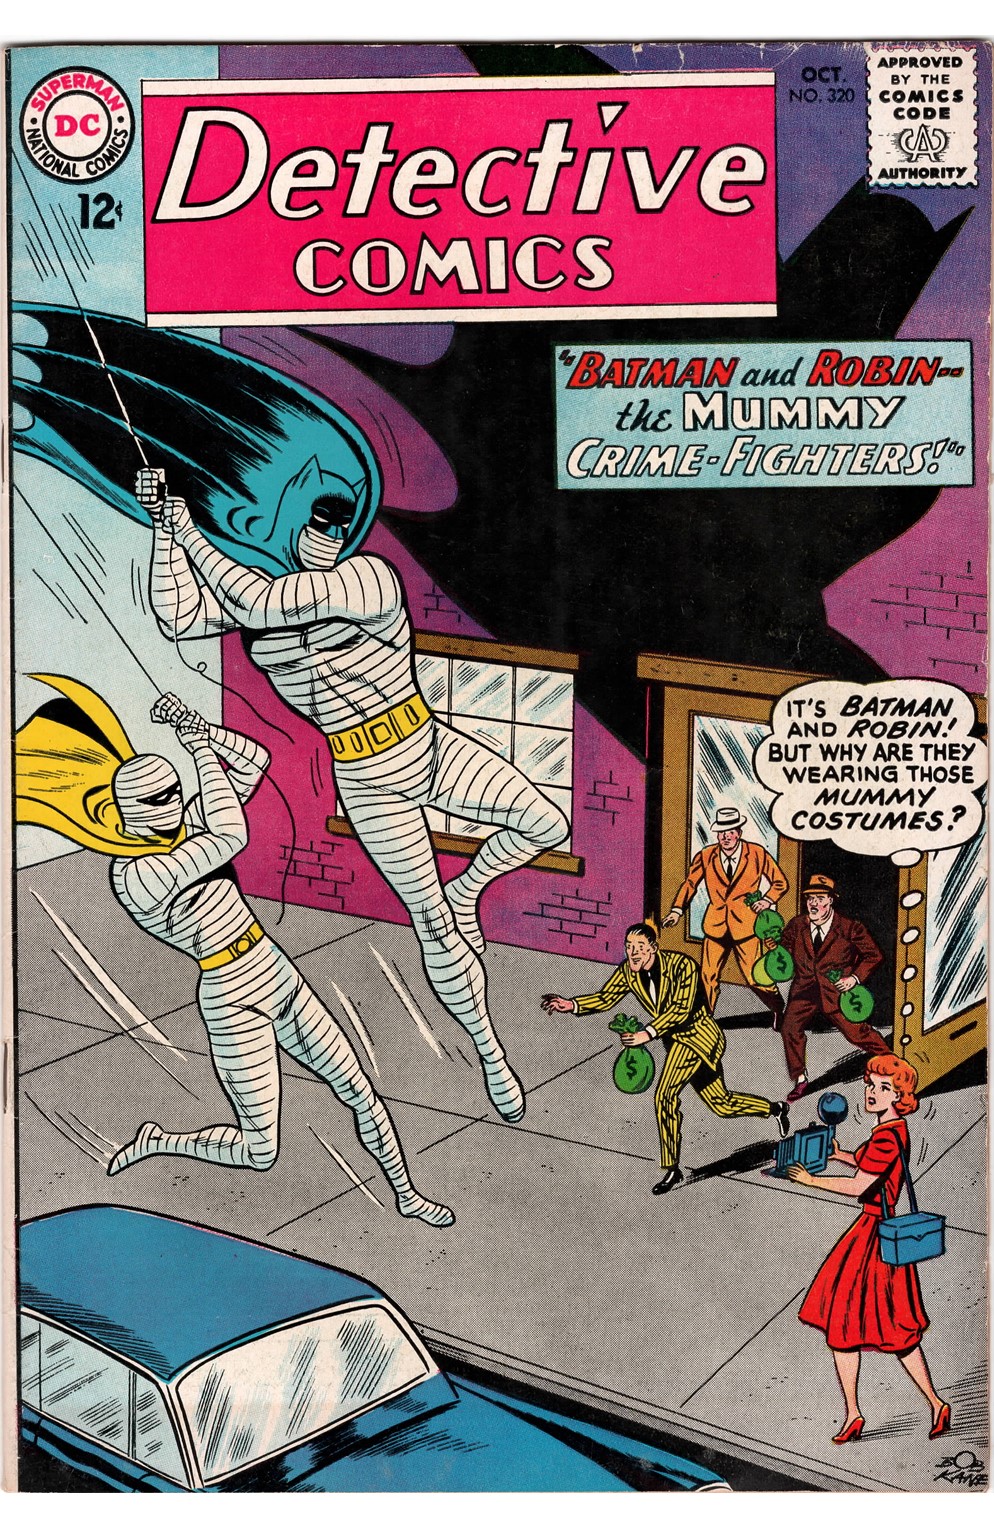 Detective Comics #0320